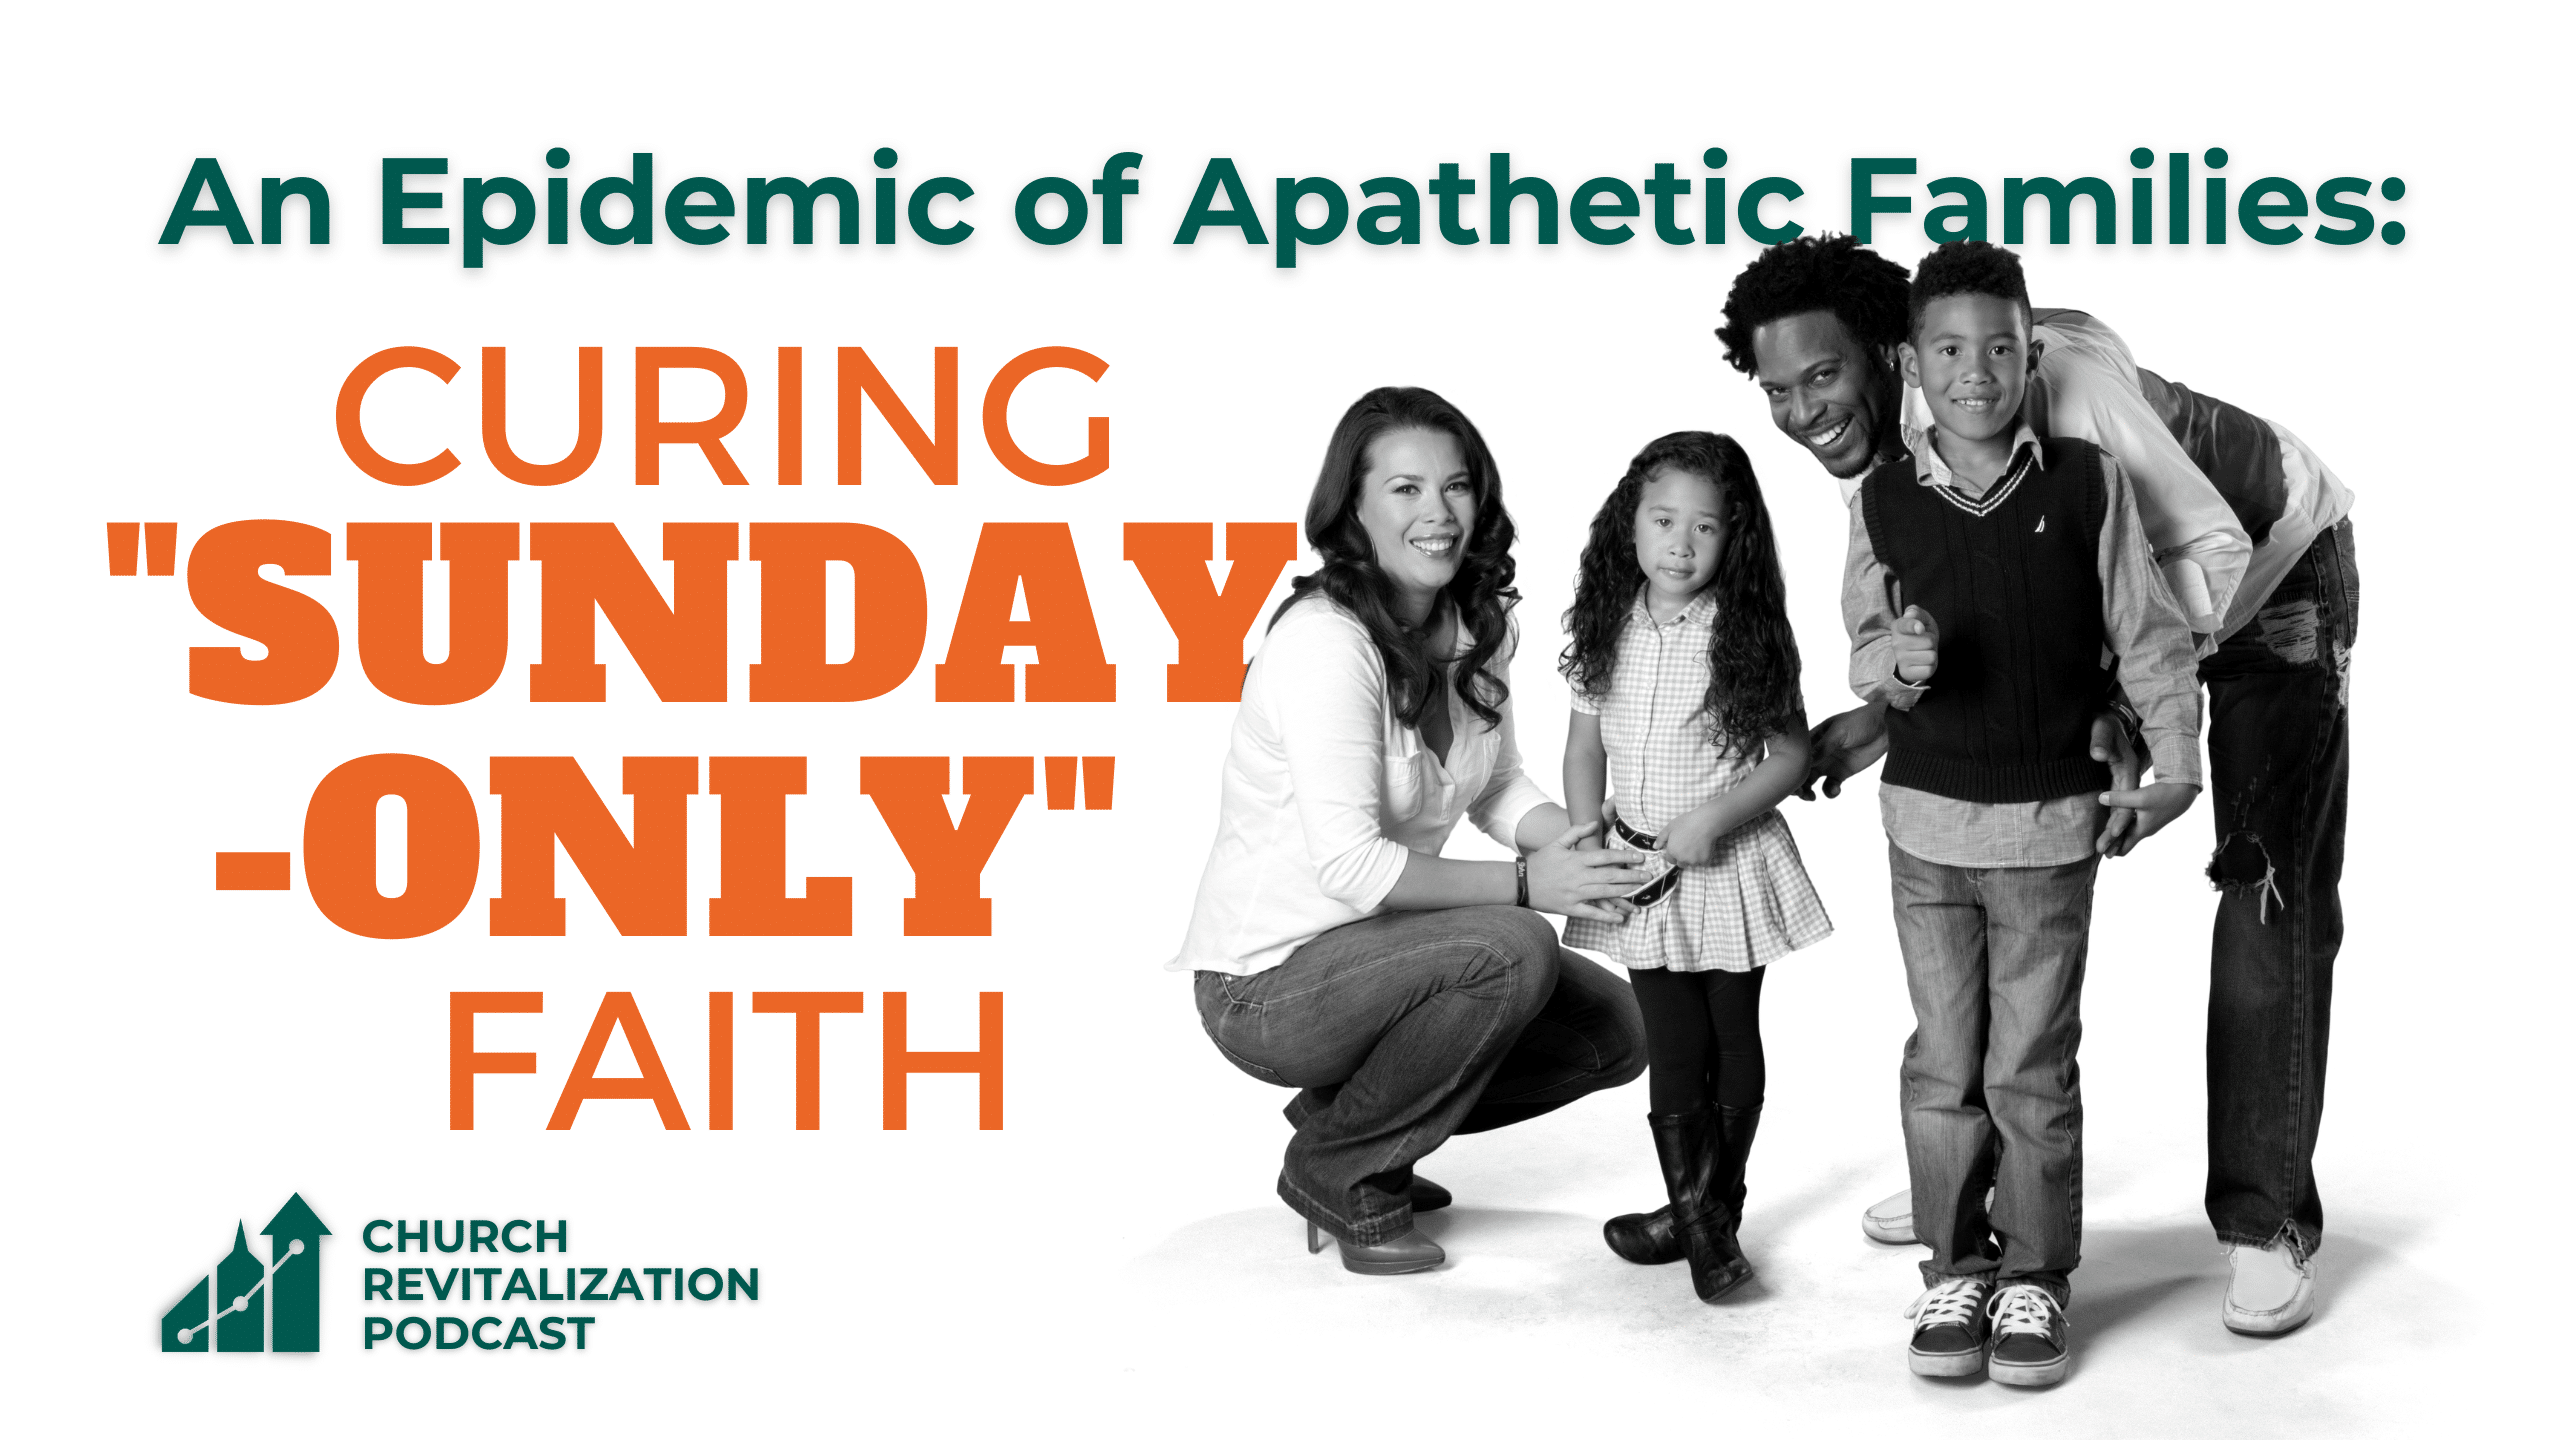 Curing "Sunday-Only" Faith